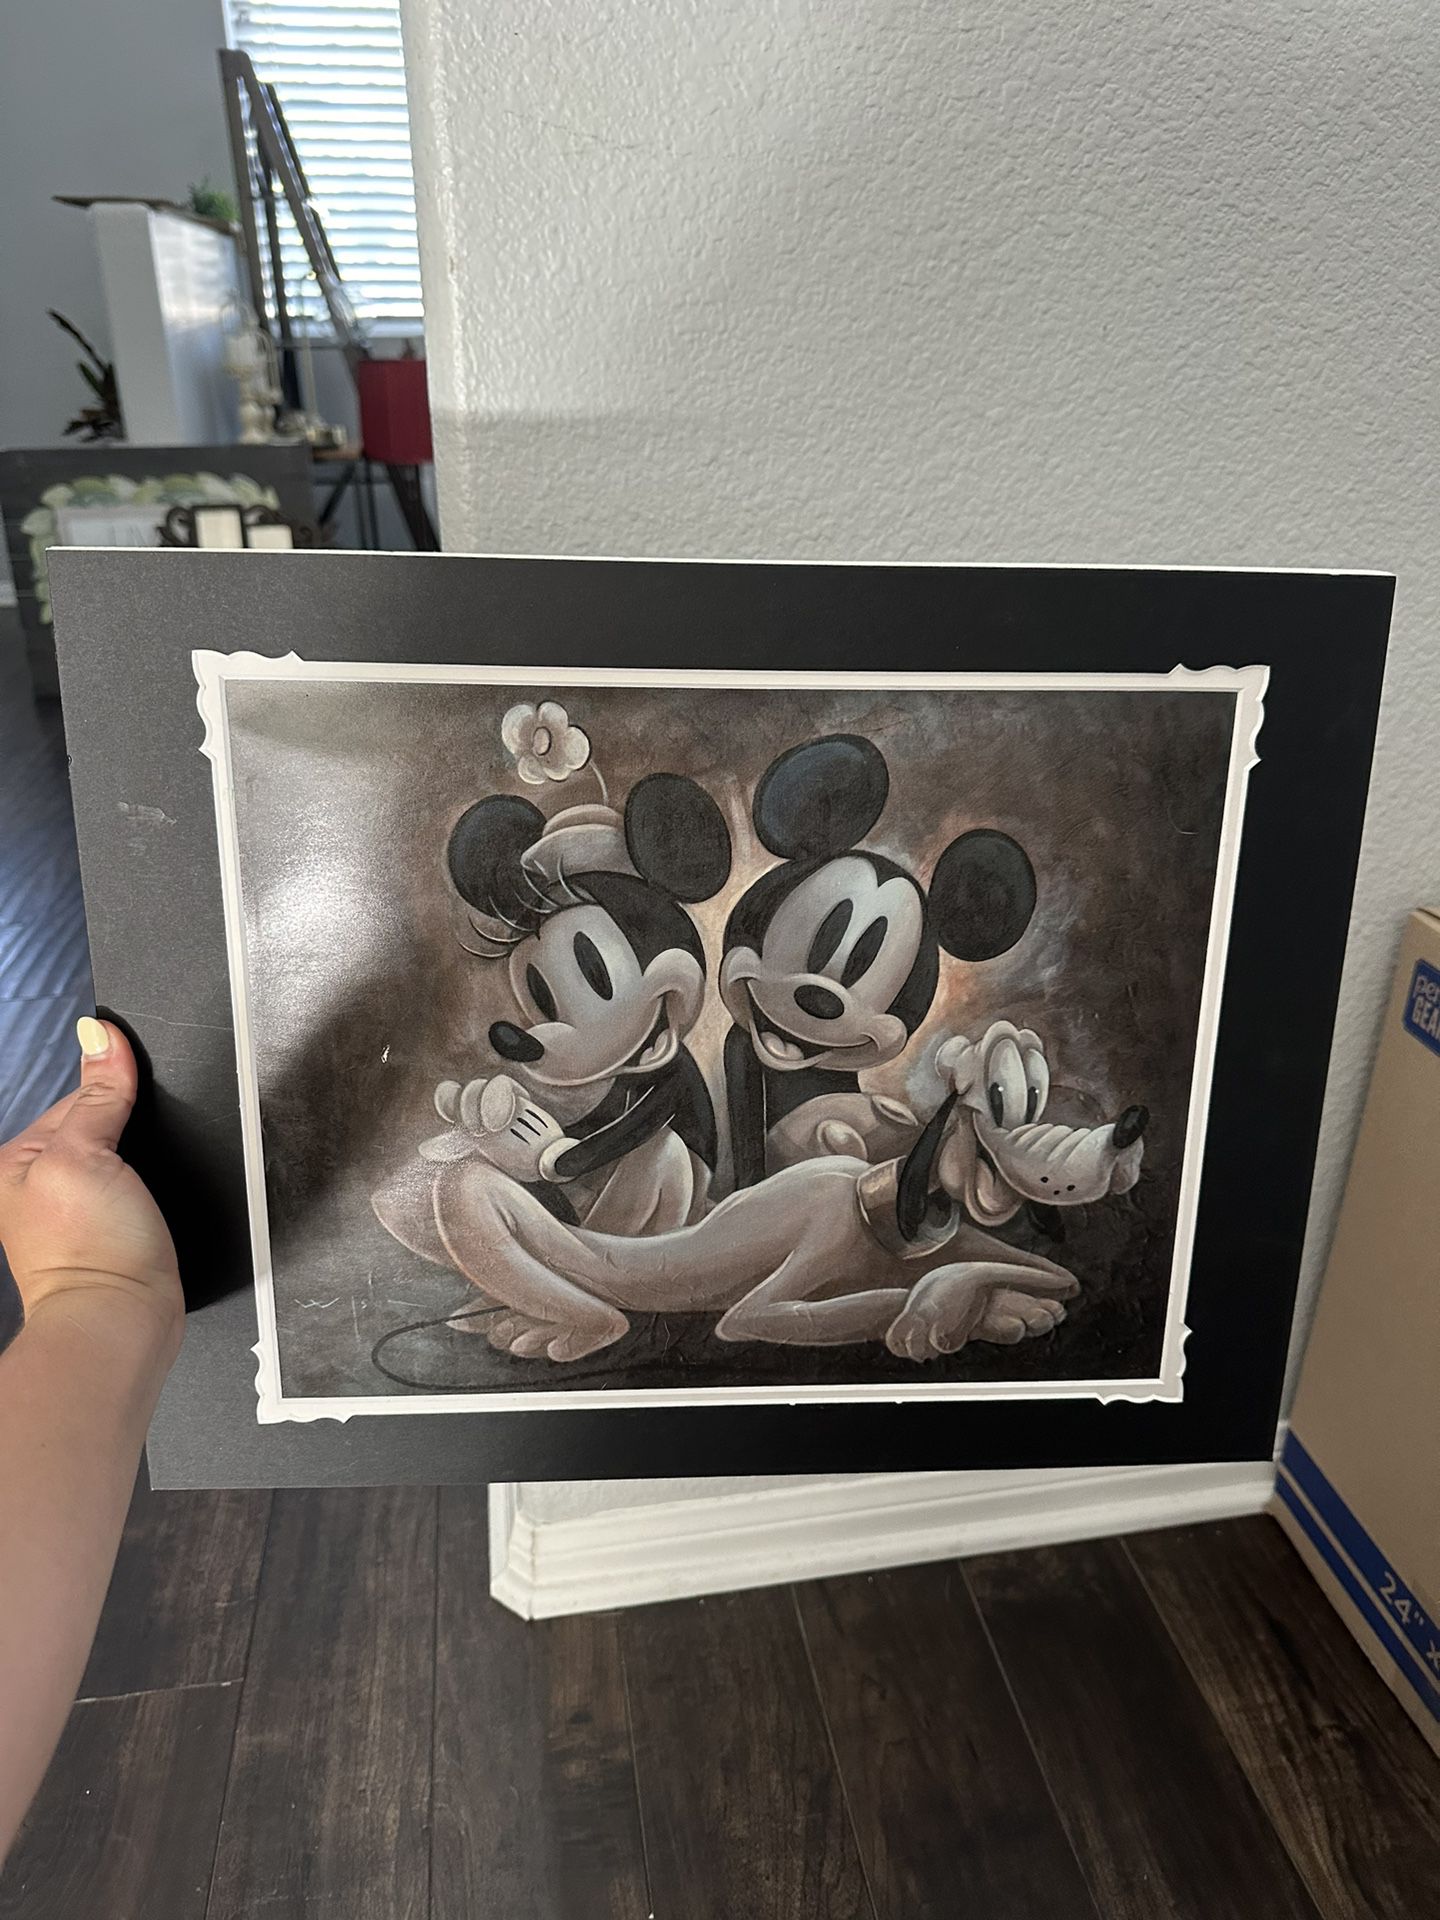 Disney Photo $20